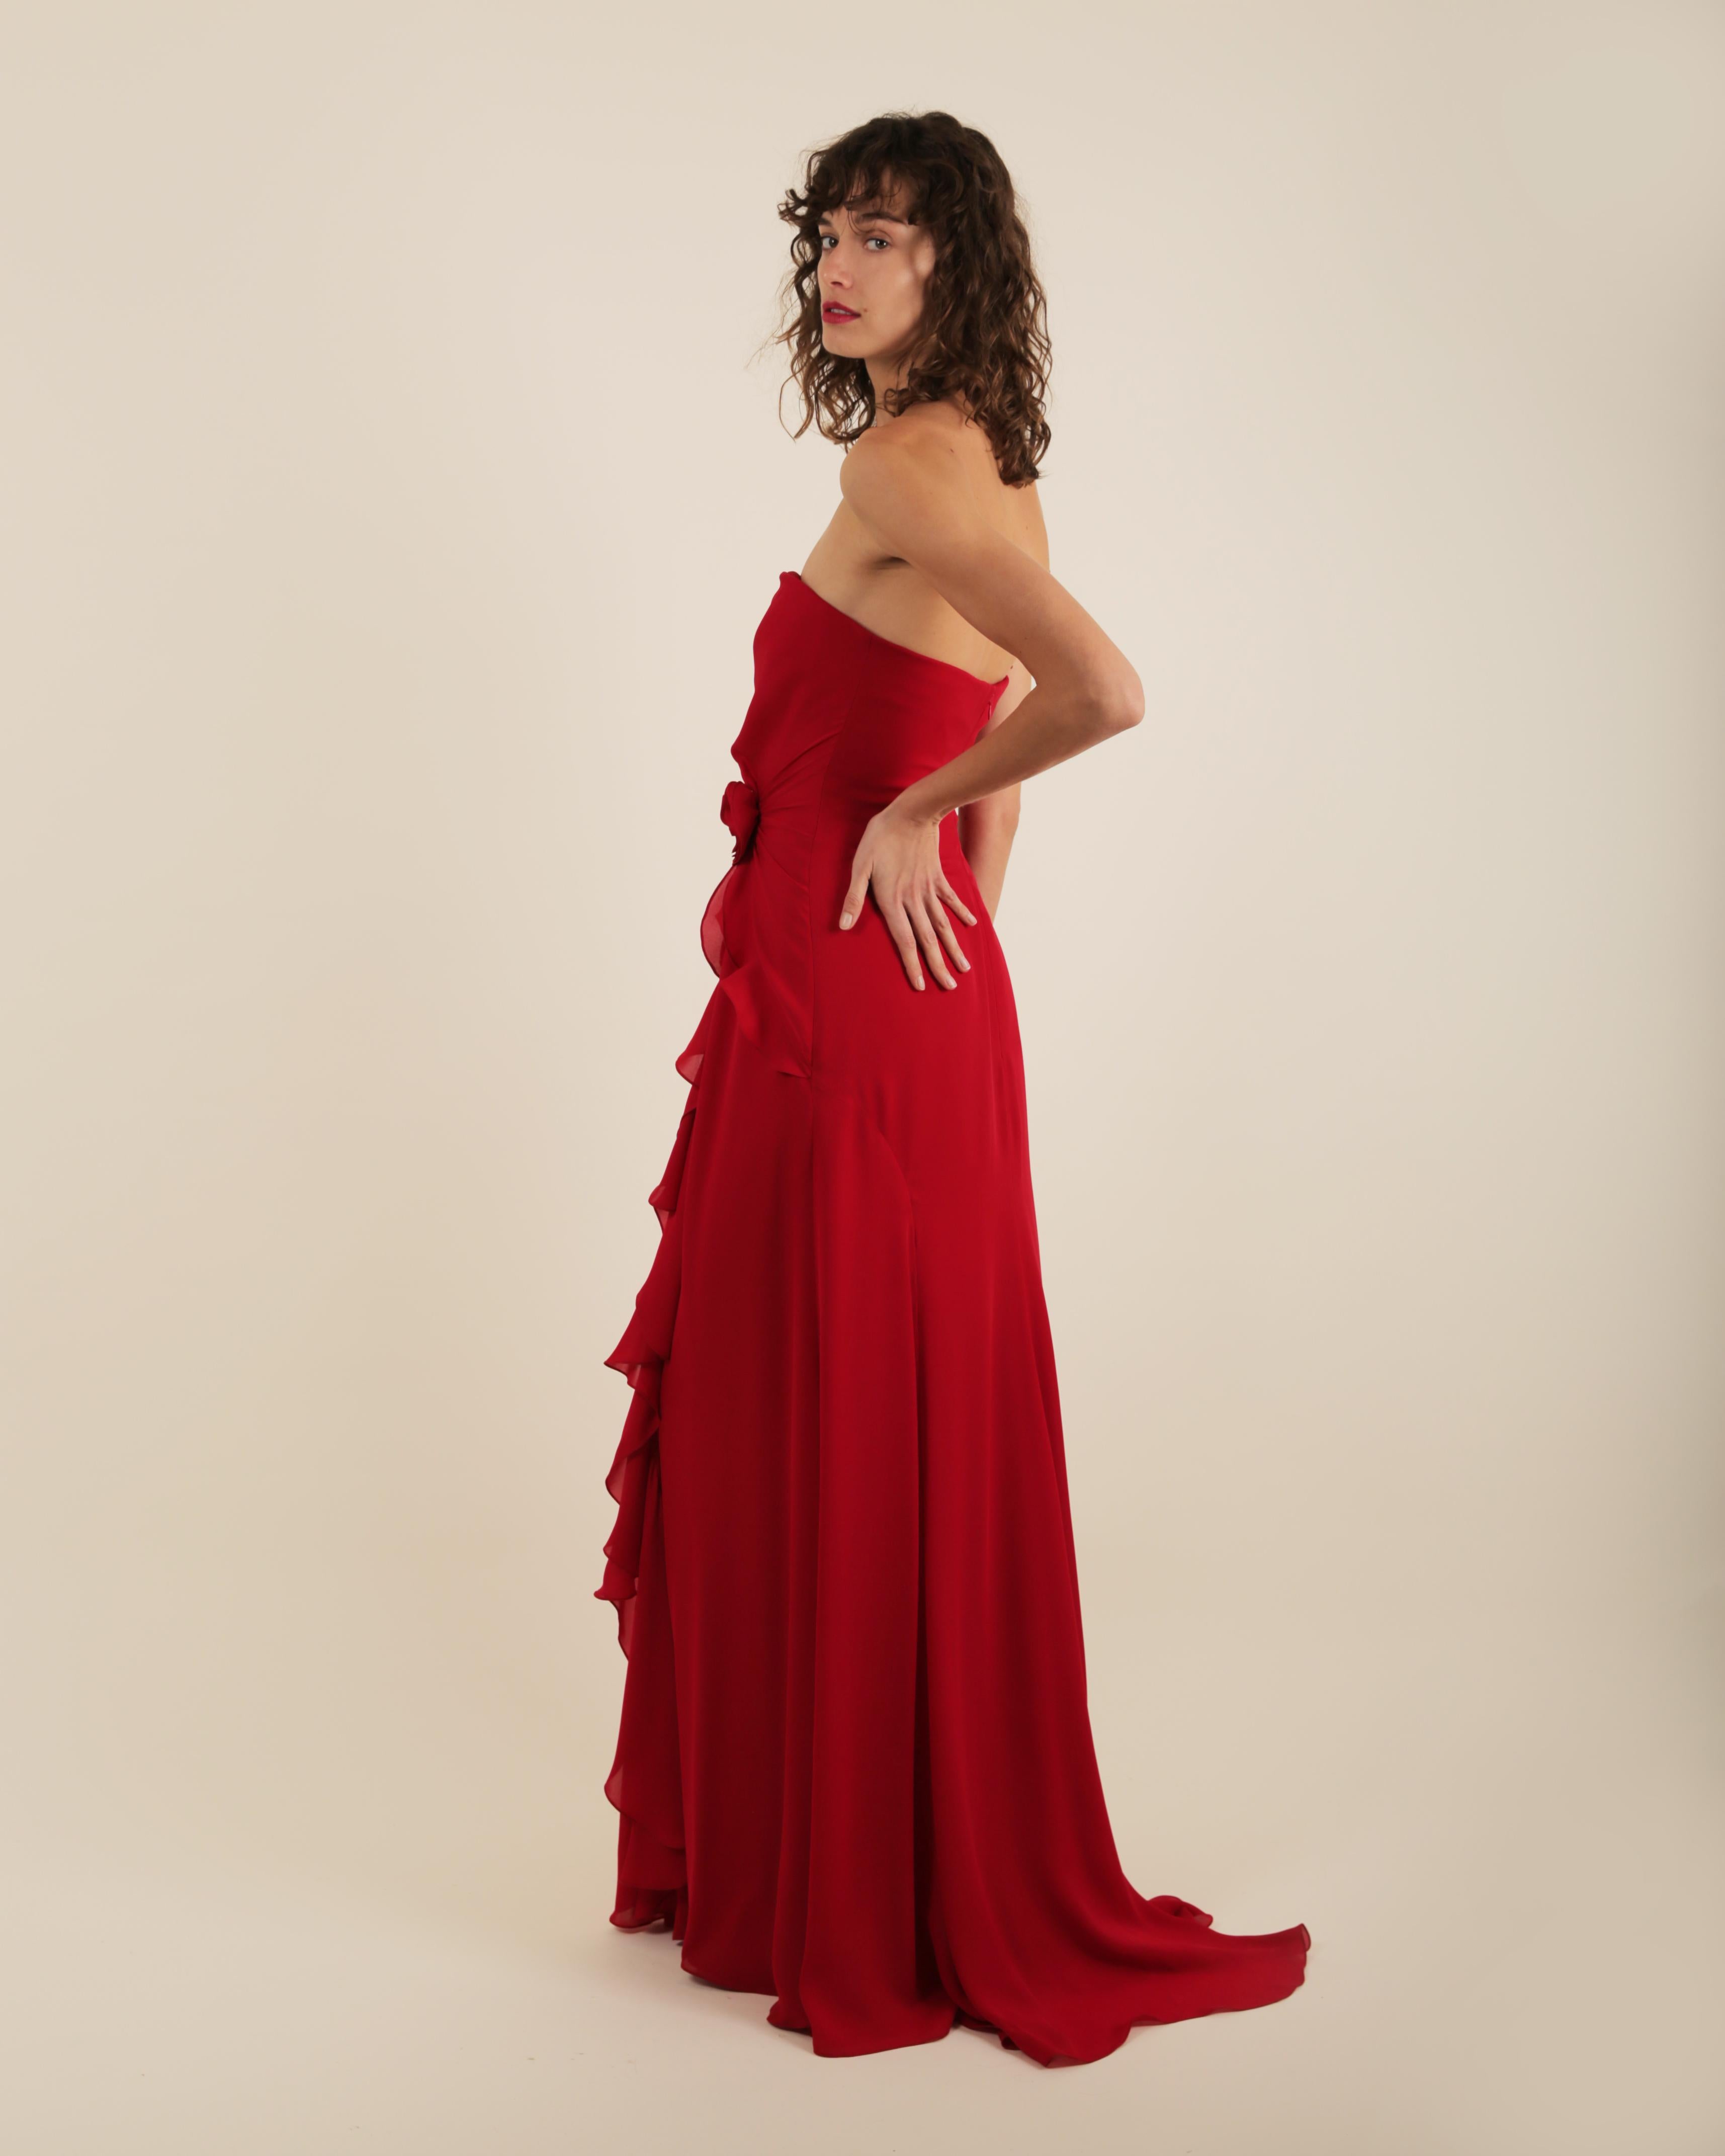 Ralph Lauren SS 2013 strapless bustier red sweetheart neck train silk gown dress 7